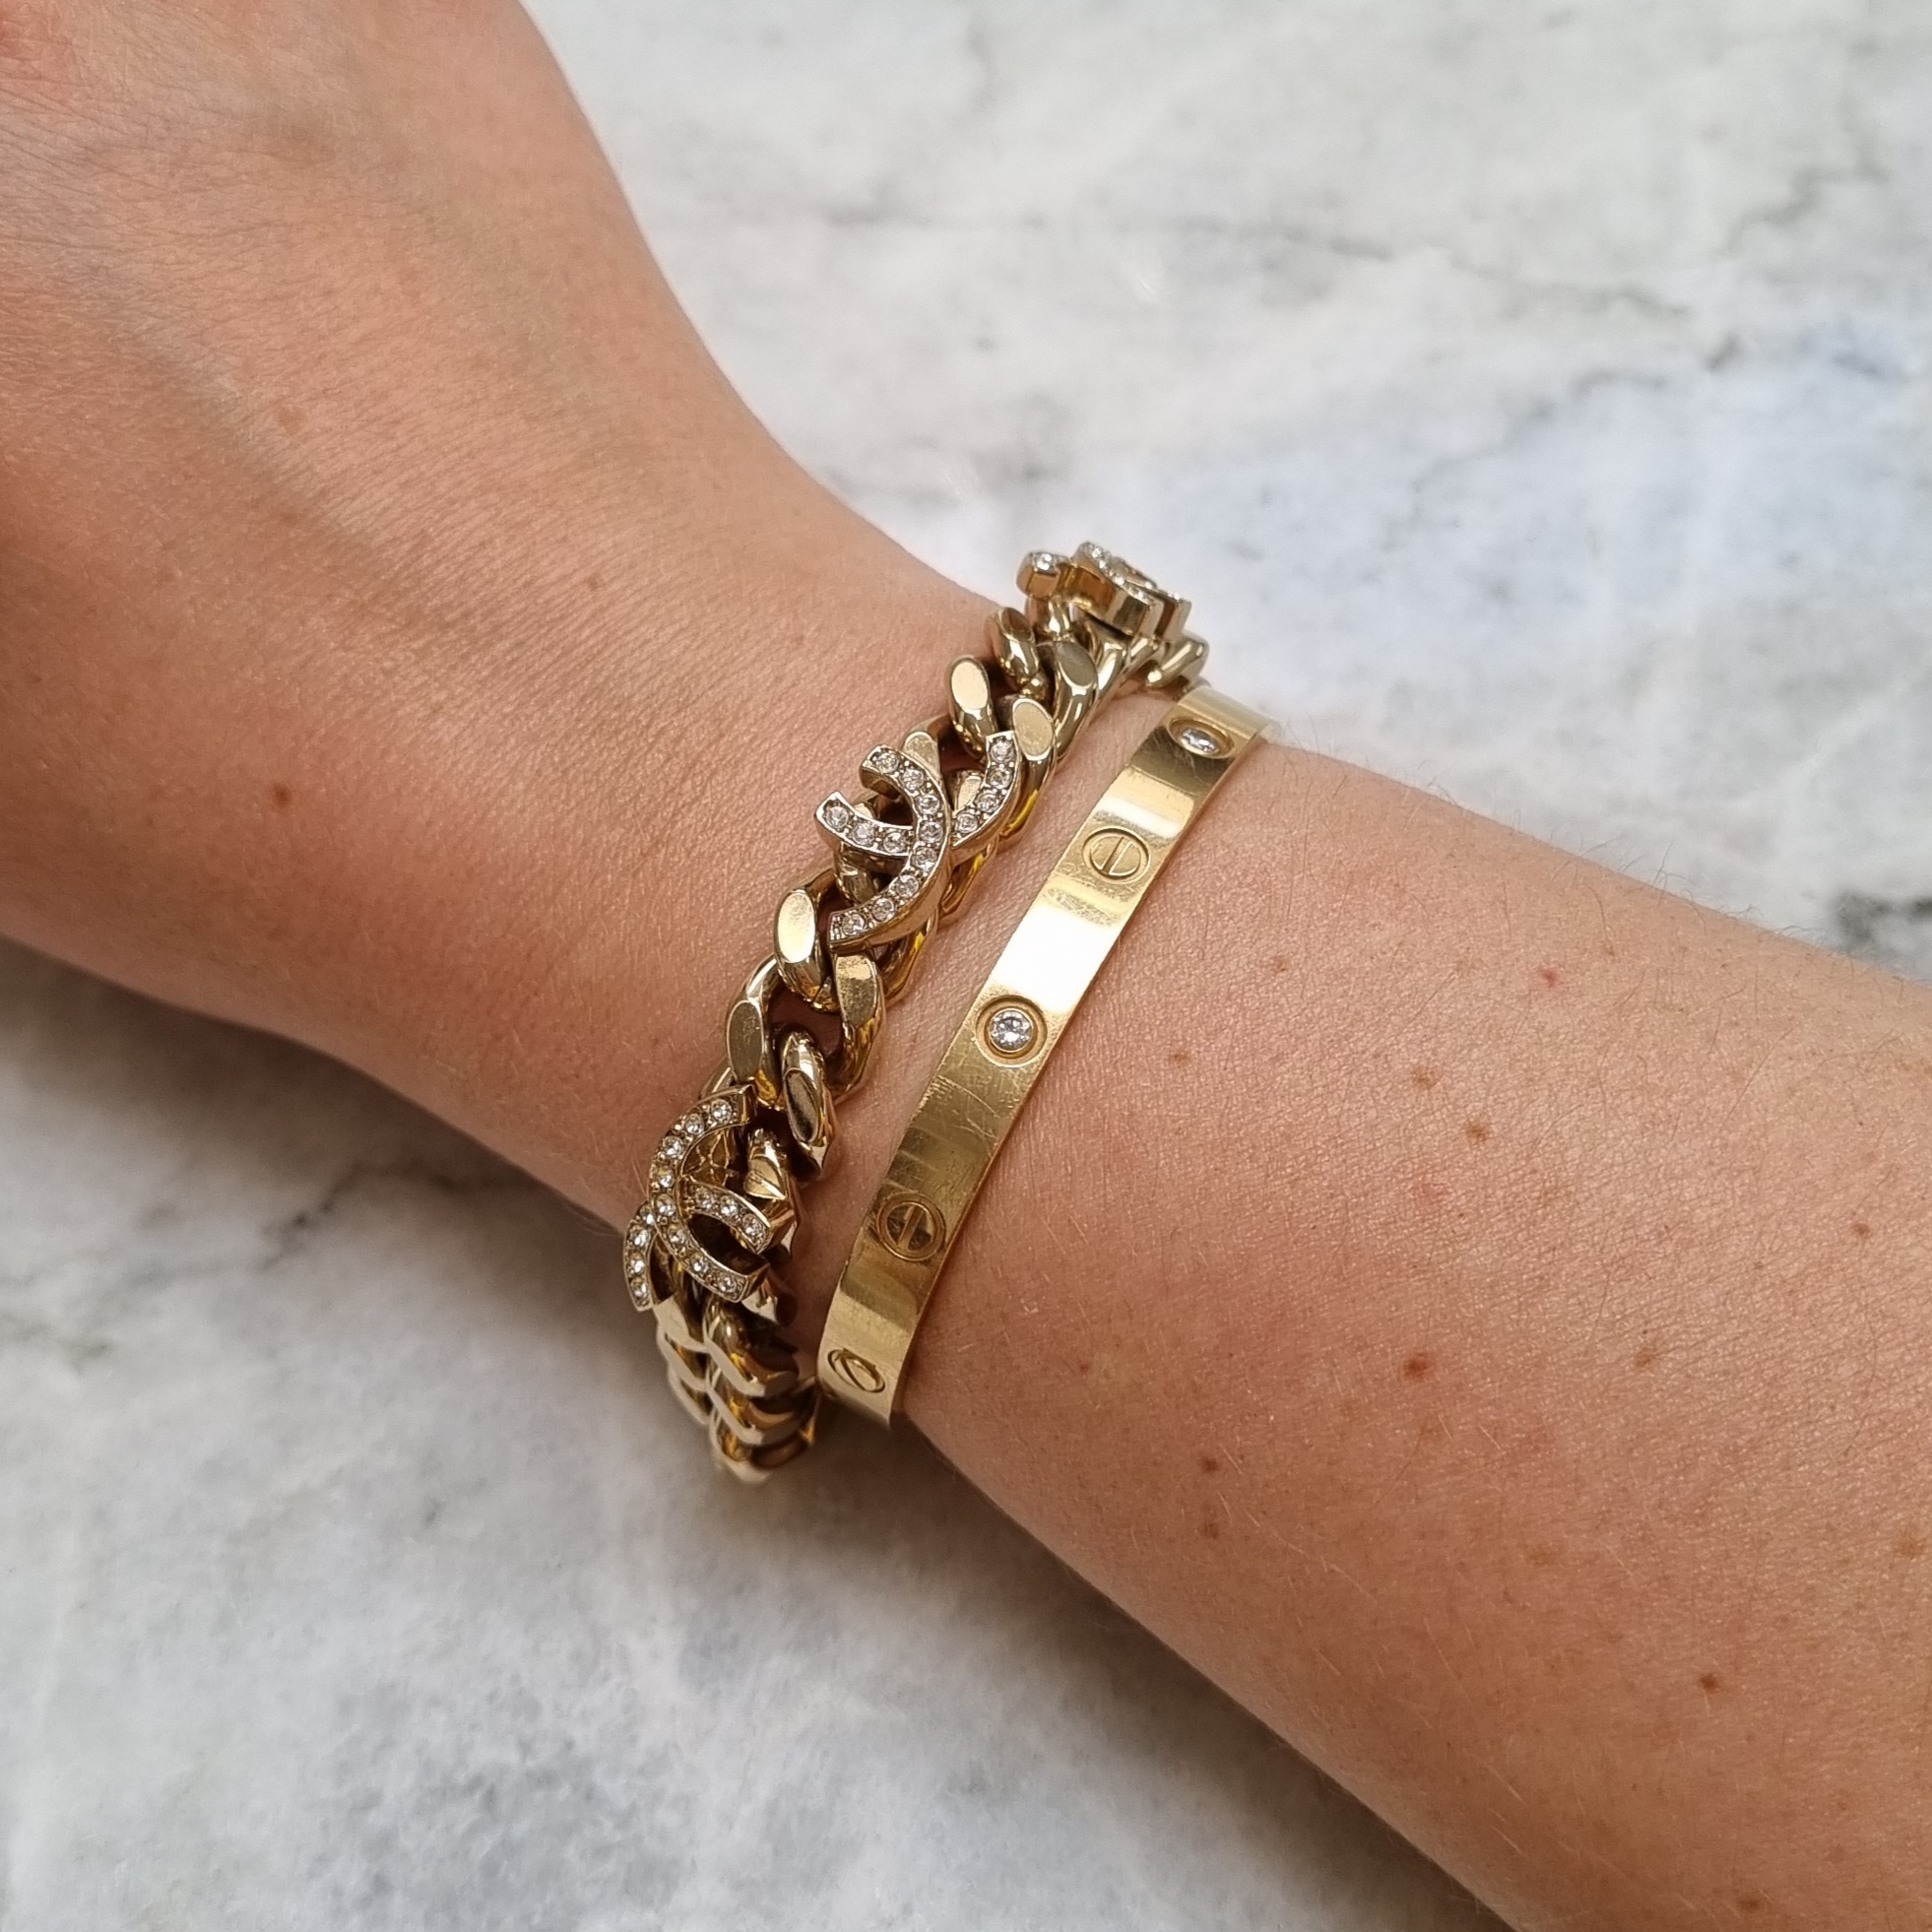 Bracelet Chanel Gold in Chain  25278917